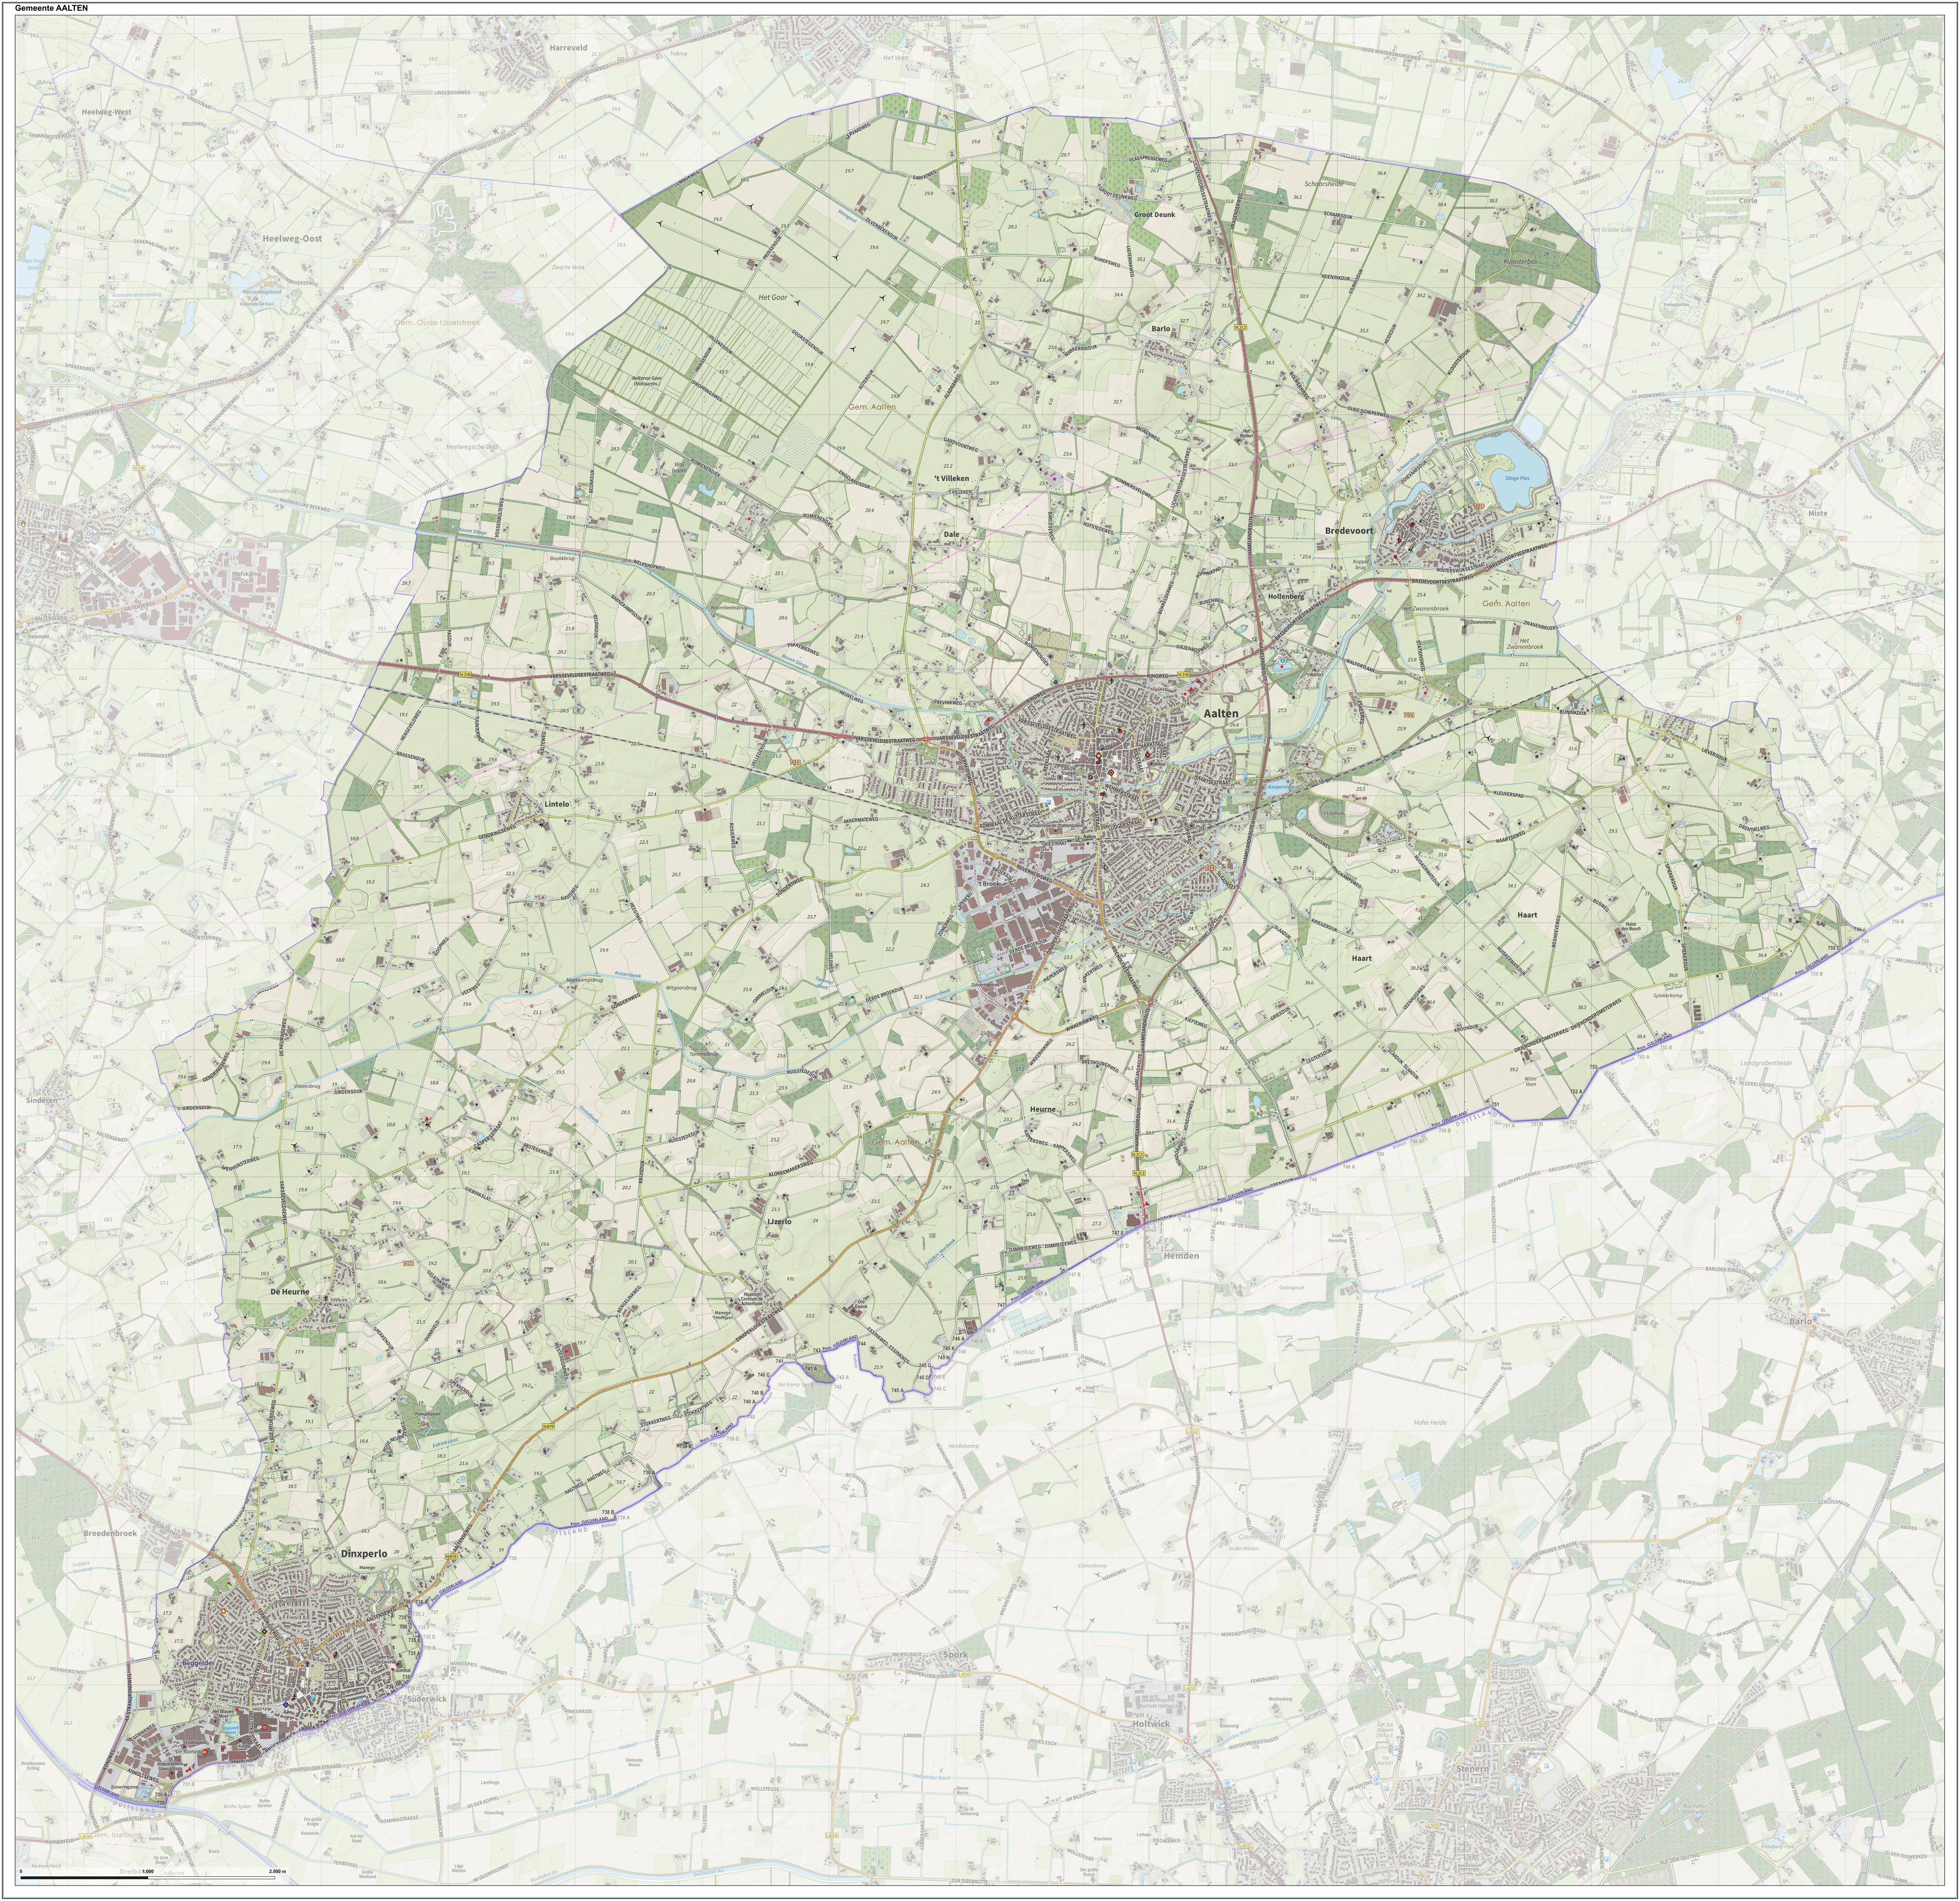 Topographic map of Aalten, June 2015